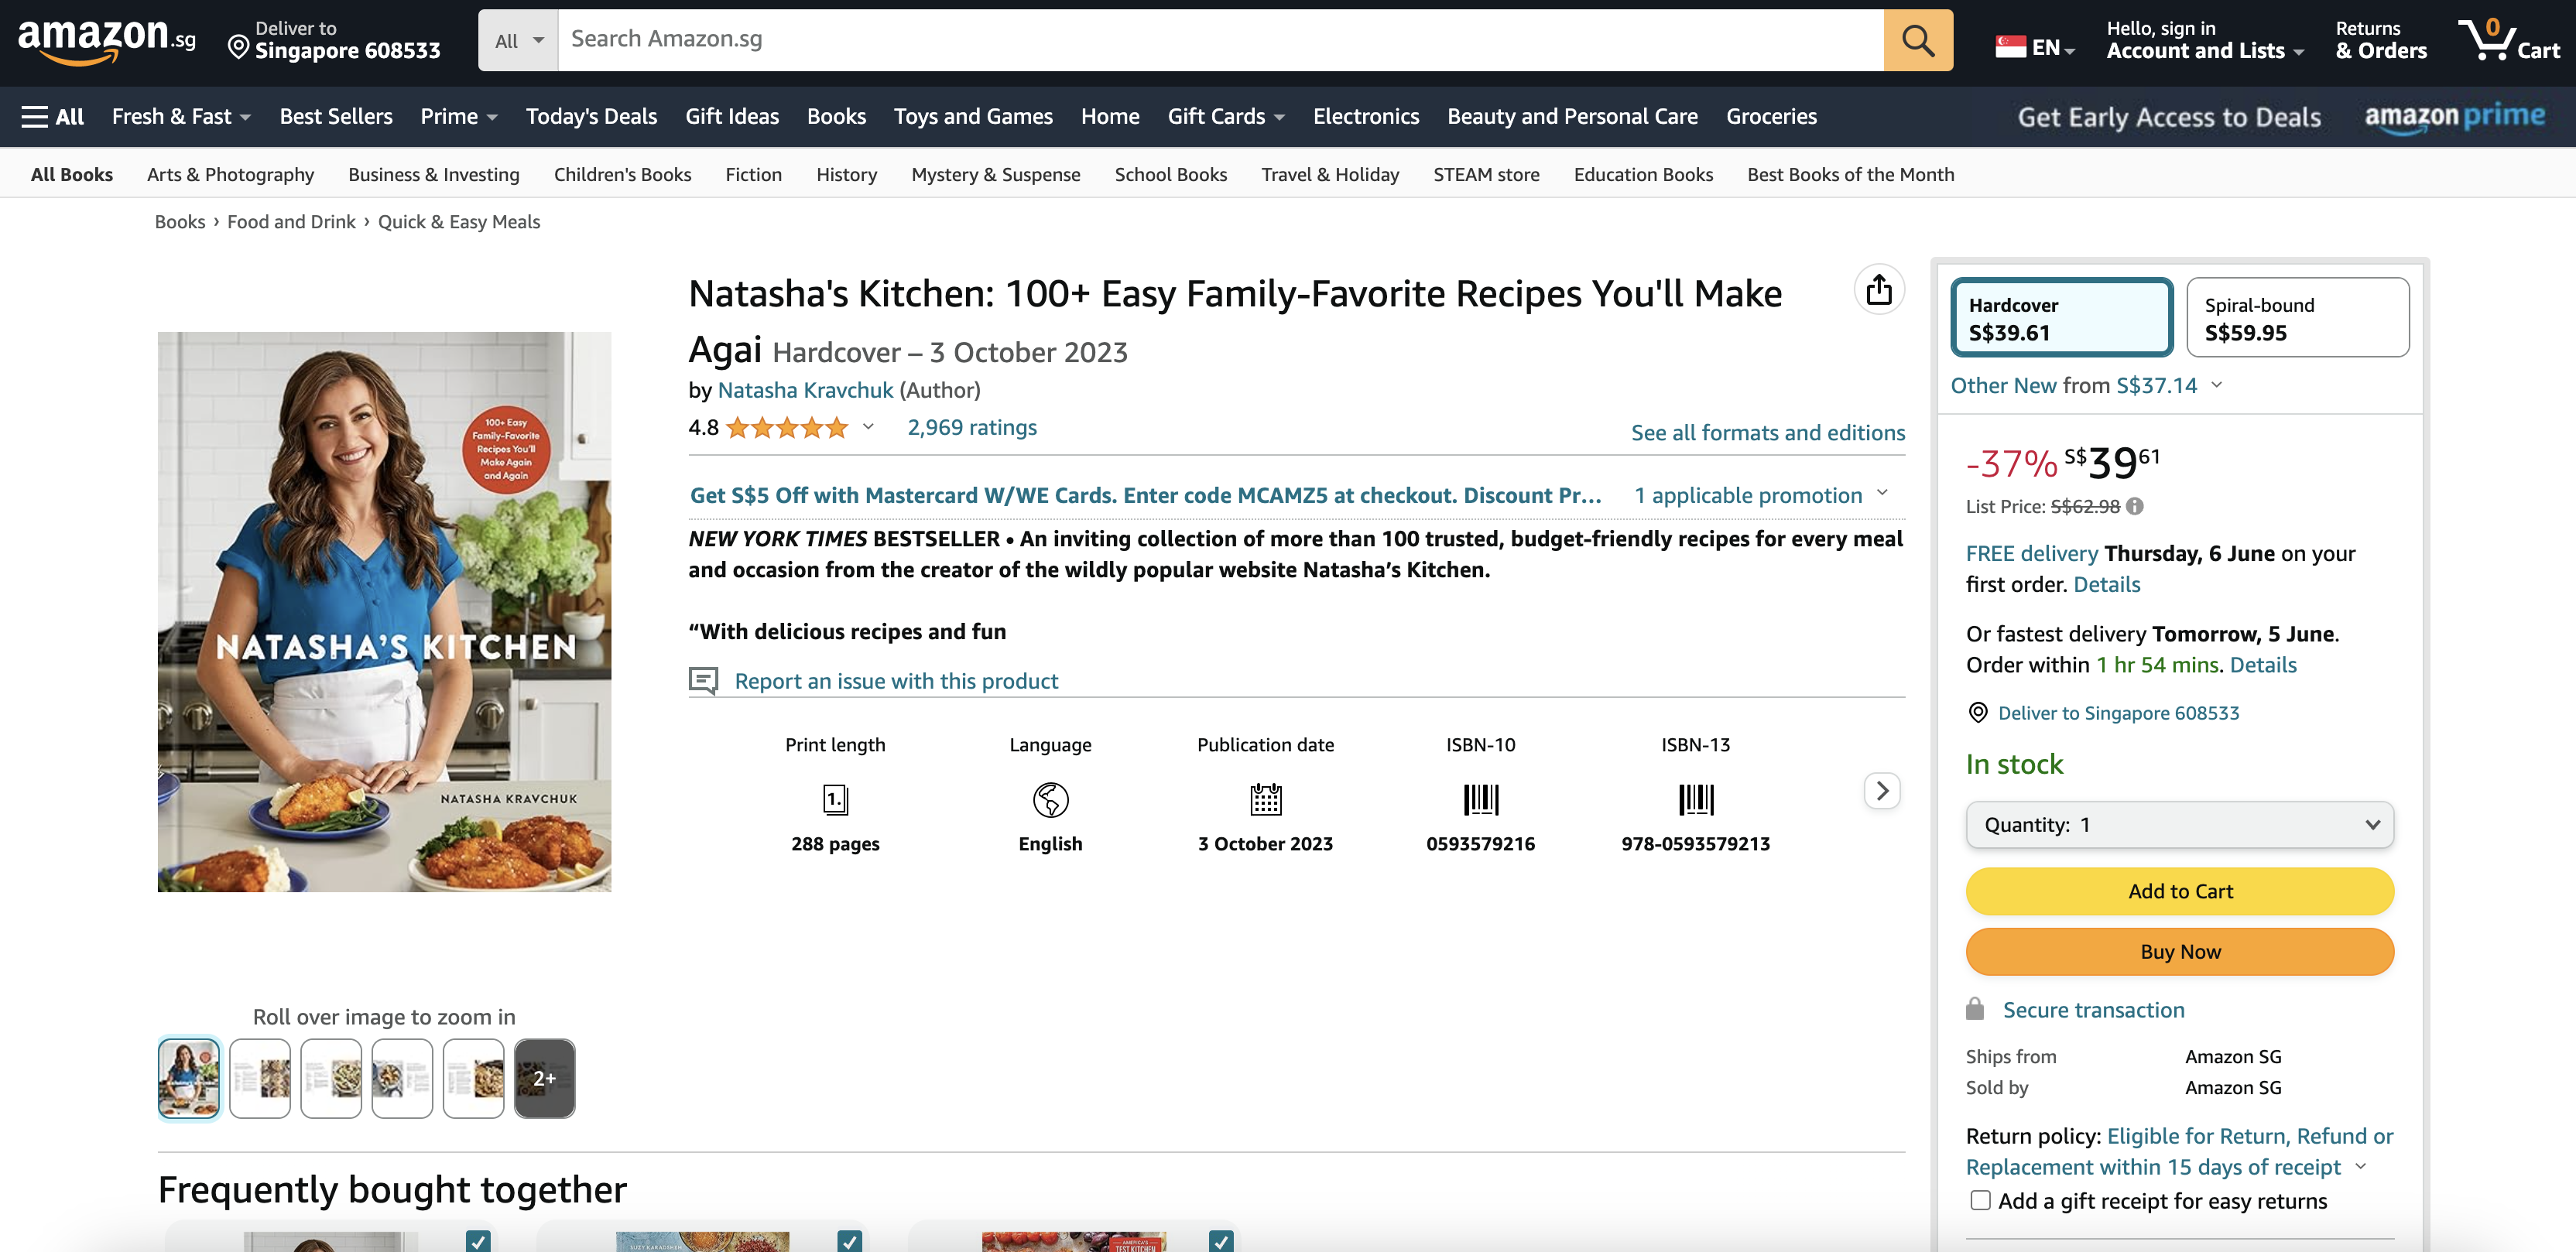 Natasha's Kitchen 100+ Easy Family-Favorite Recipes